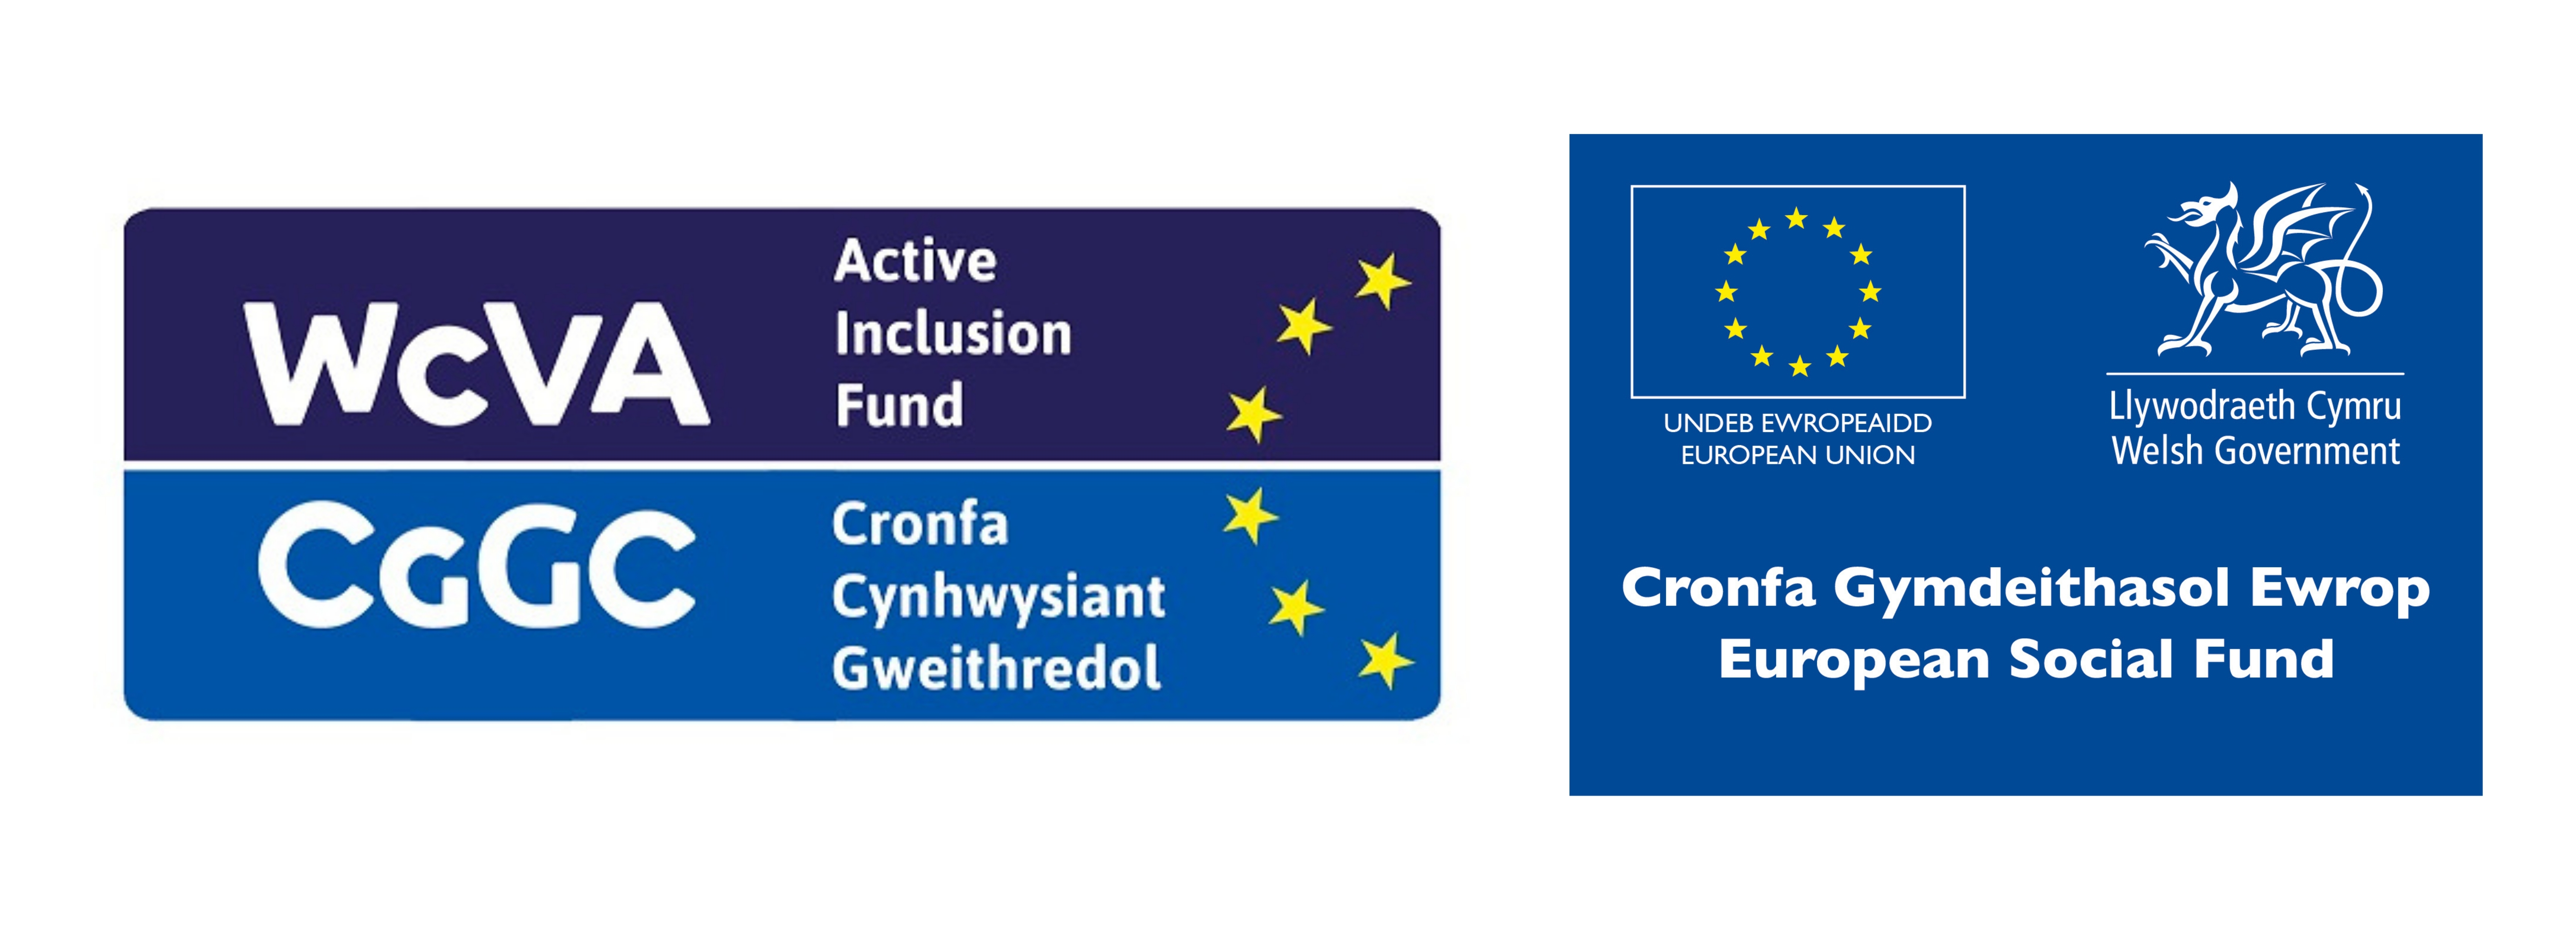 WCVA EU Social Fund Logo Strip